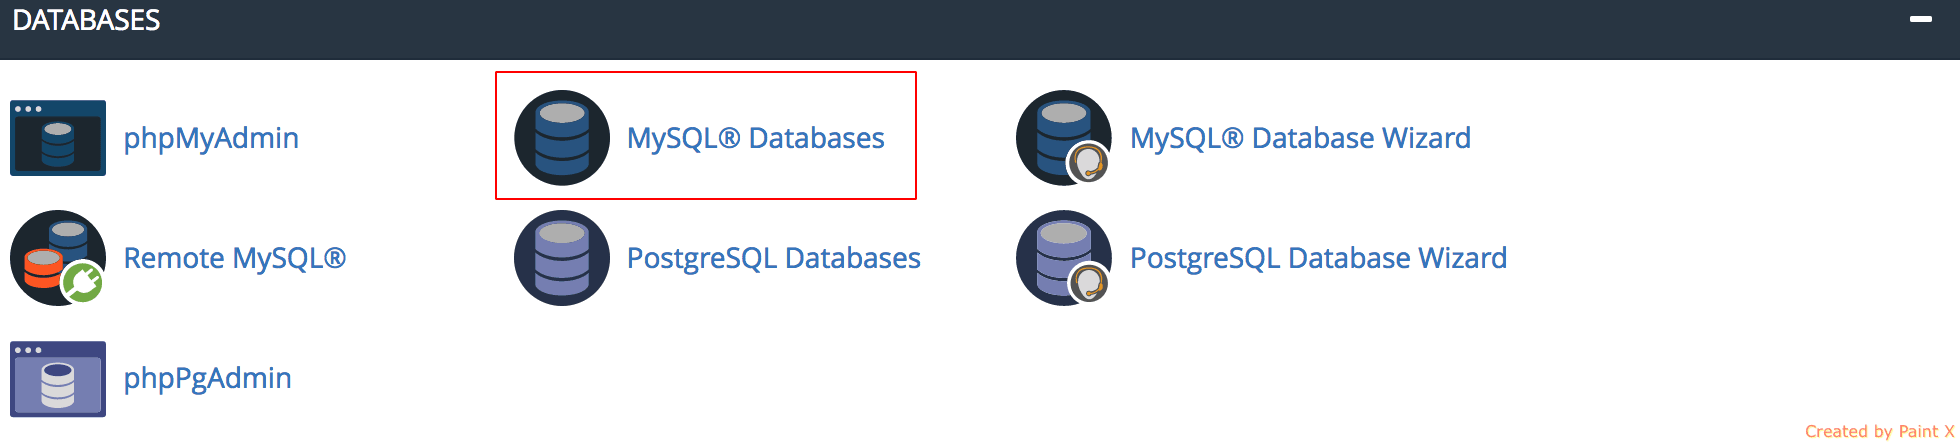 MySQL-Databases